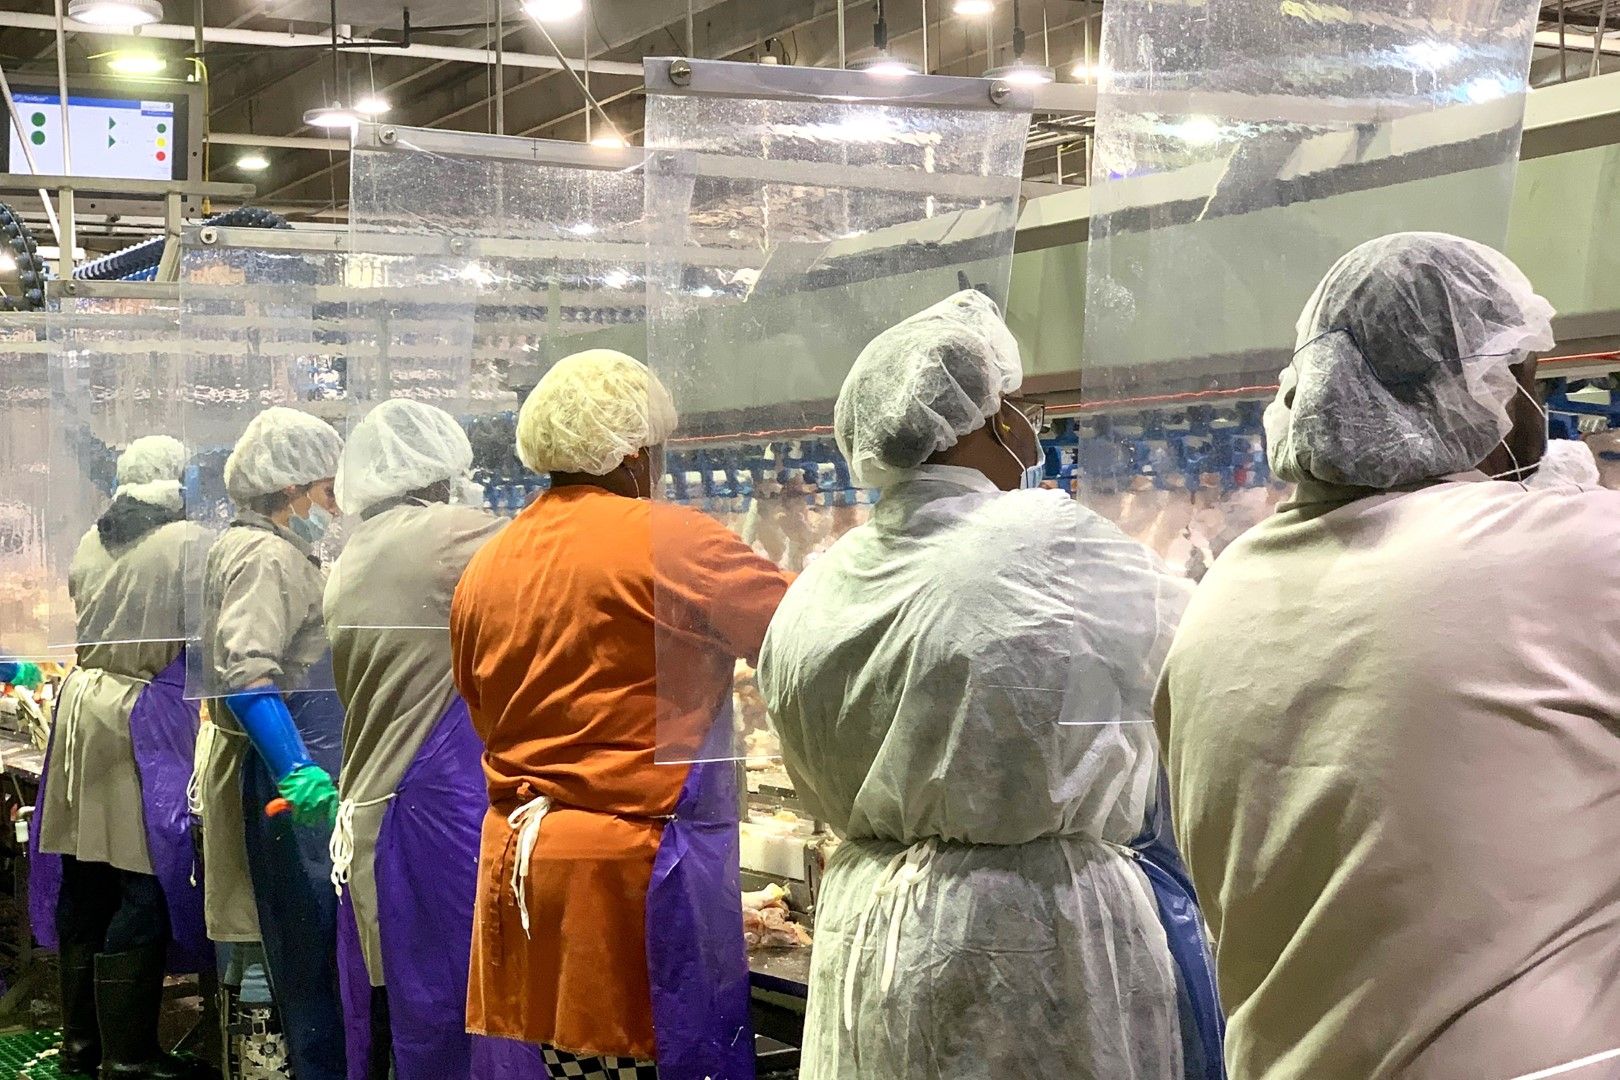 Работниците в месокомбинат на компанията Тайсън (Tyson) носят маски и са зад пластмасови прегради